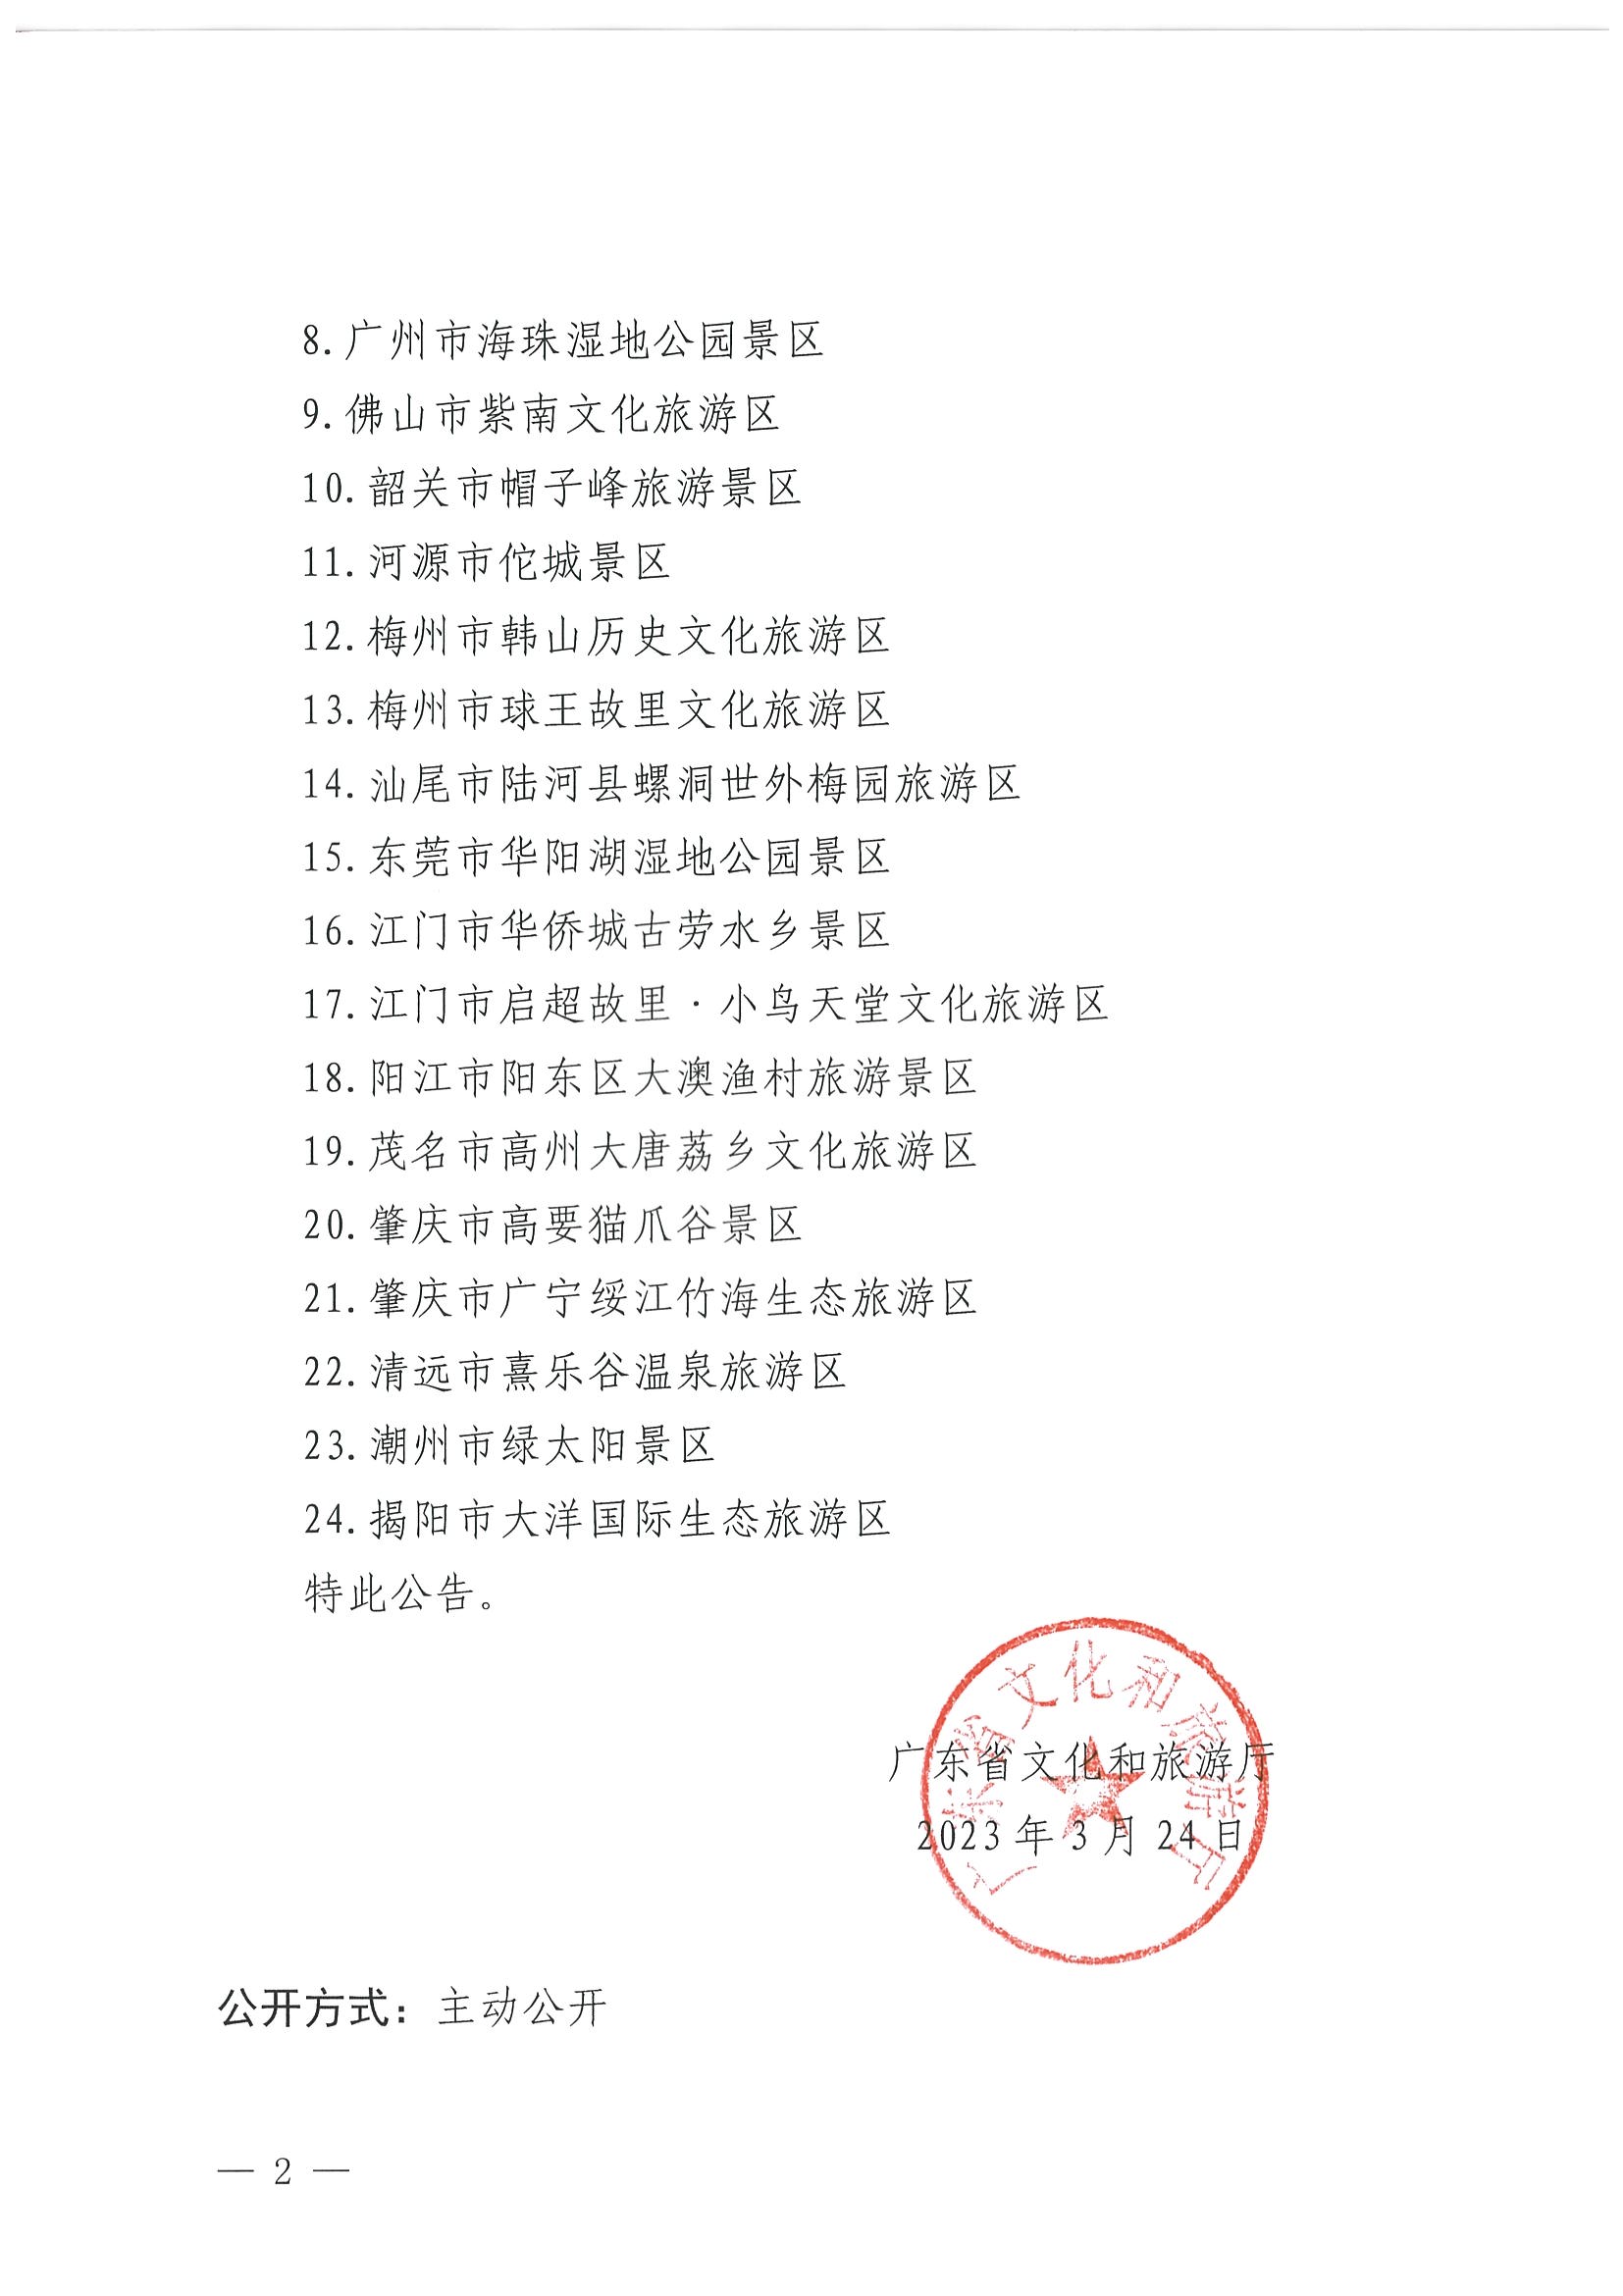 广东省文化和旅游厅关于确定24家旅游景区为国家4A级旅游景区的公告_页面_2.jpg